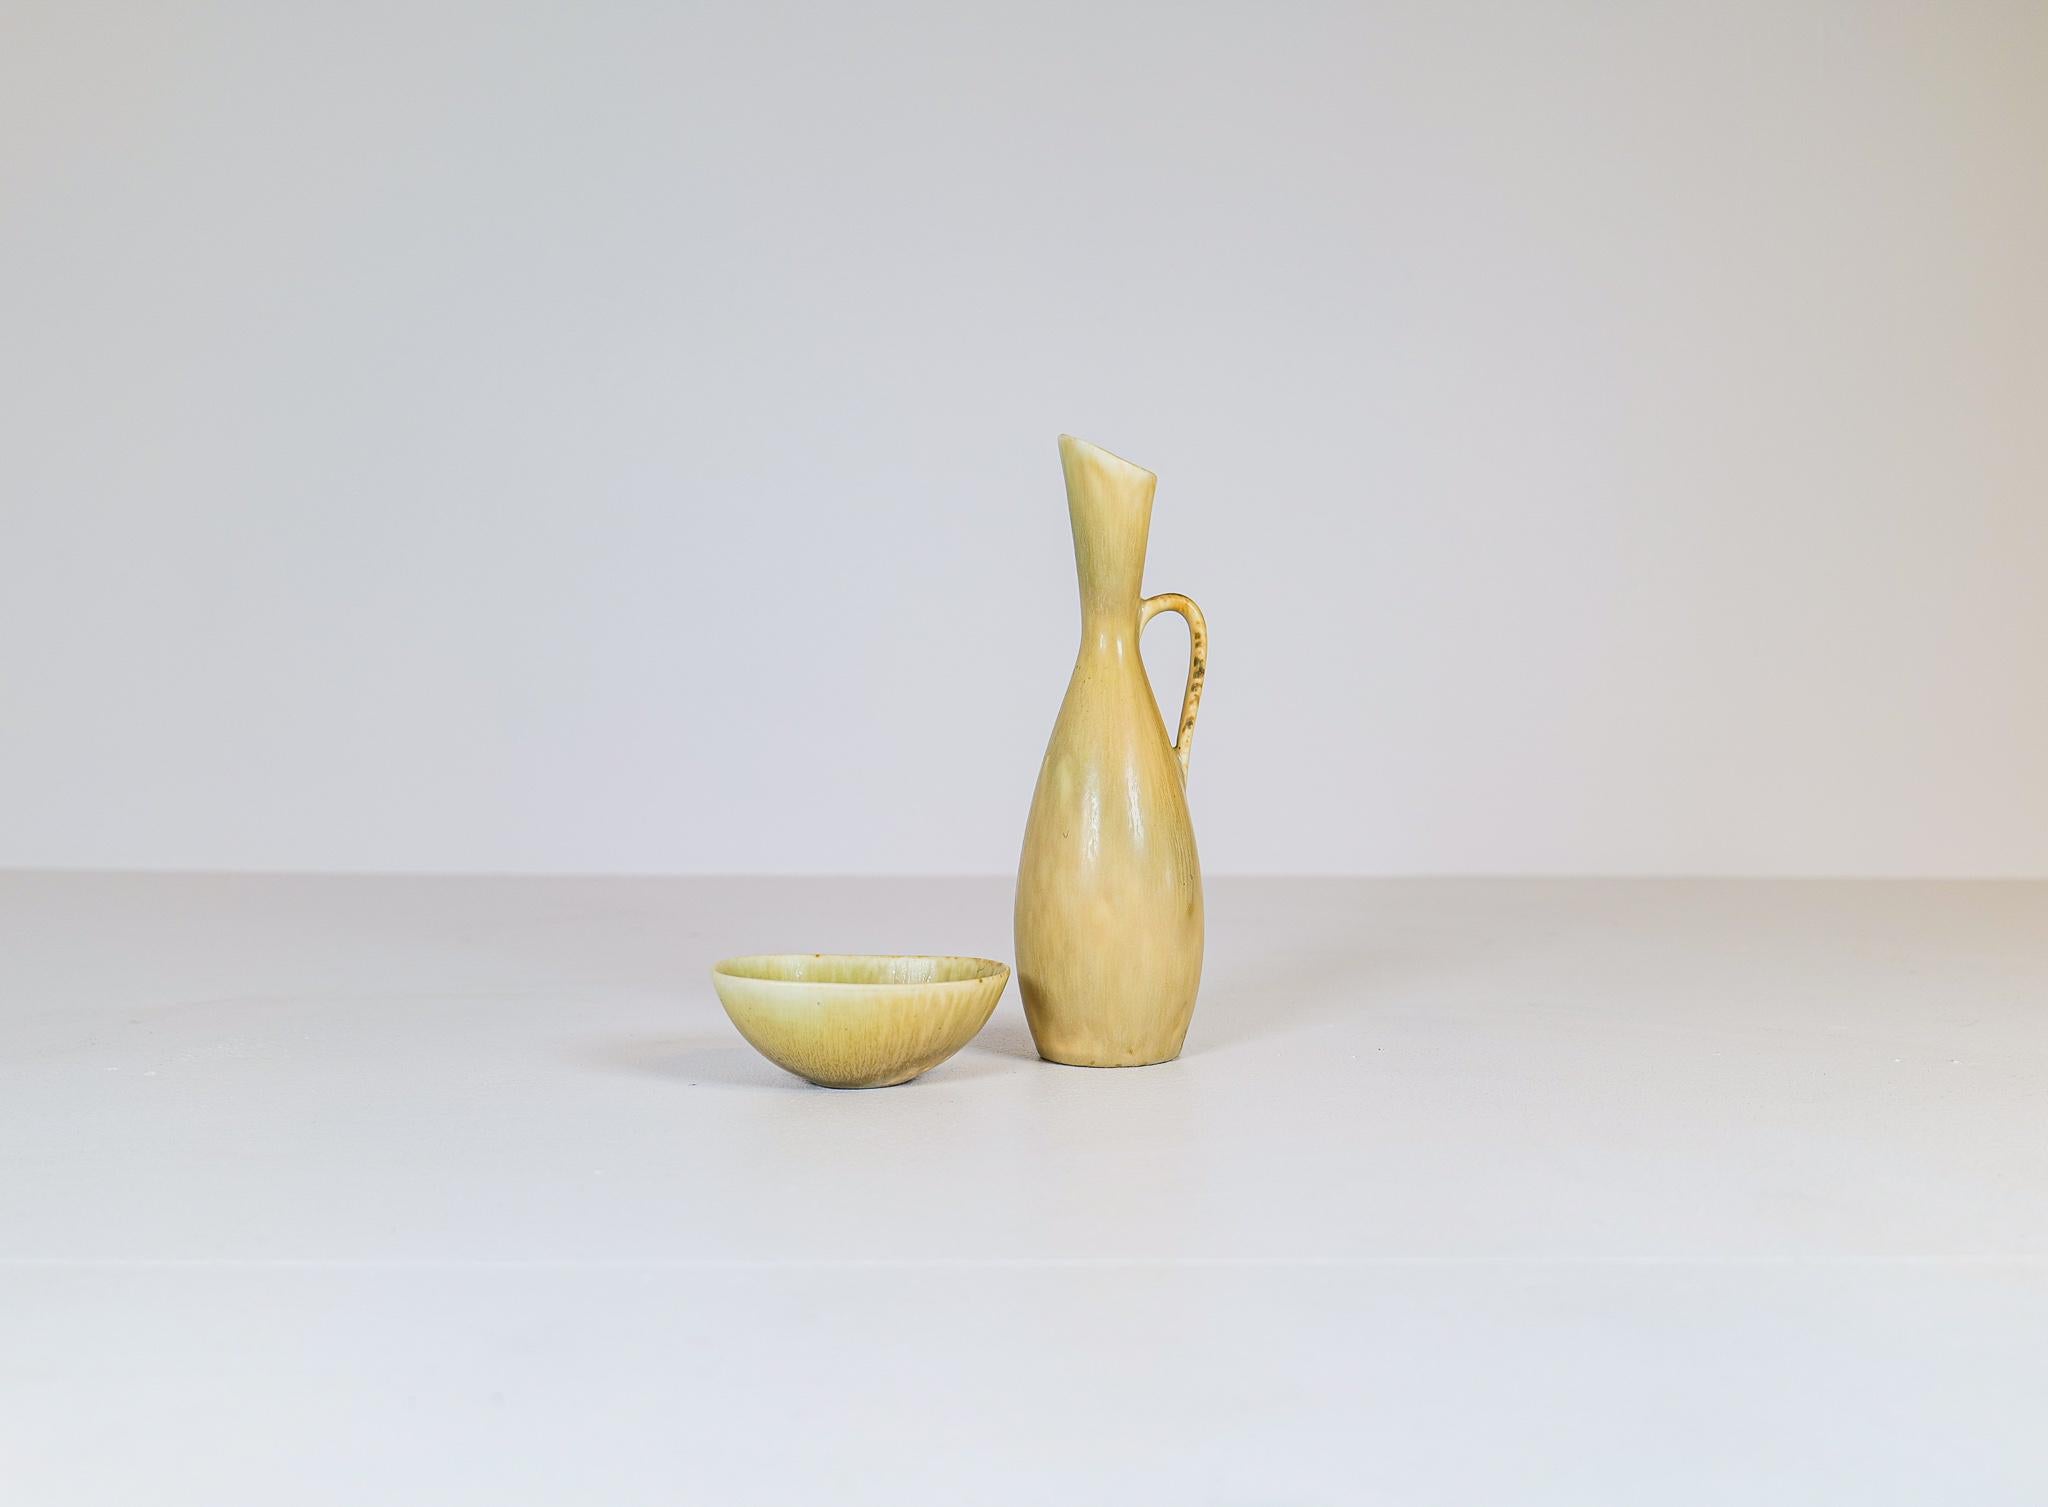 Sehr schönes Set aus einer Schale und einer Vase. Hergestellt in Schweden in den 1950er Jahren und entworfen von Stålhane. Die berühmte Fabrik Rörstrand war der Hersteller. 

Guter Zustand

Maße Schale 12 x 10 x 4 cm und Vase H 26 cm T 9 cm.